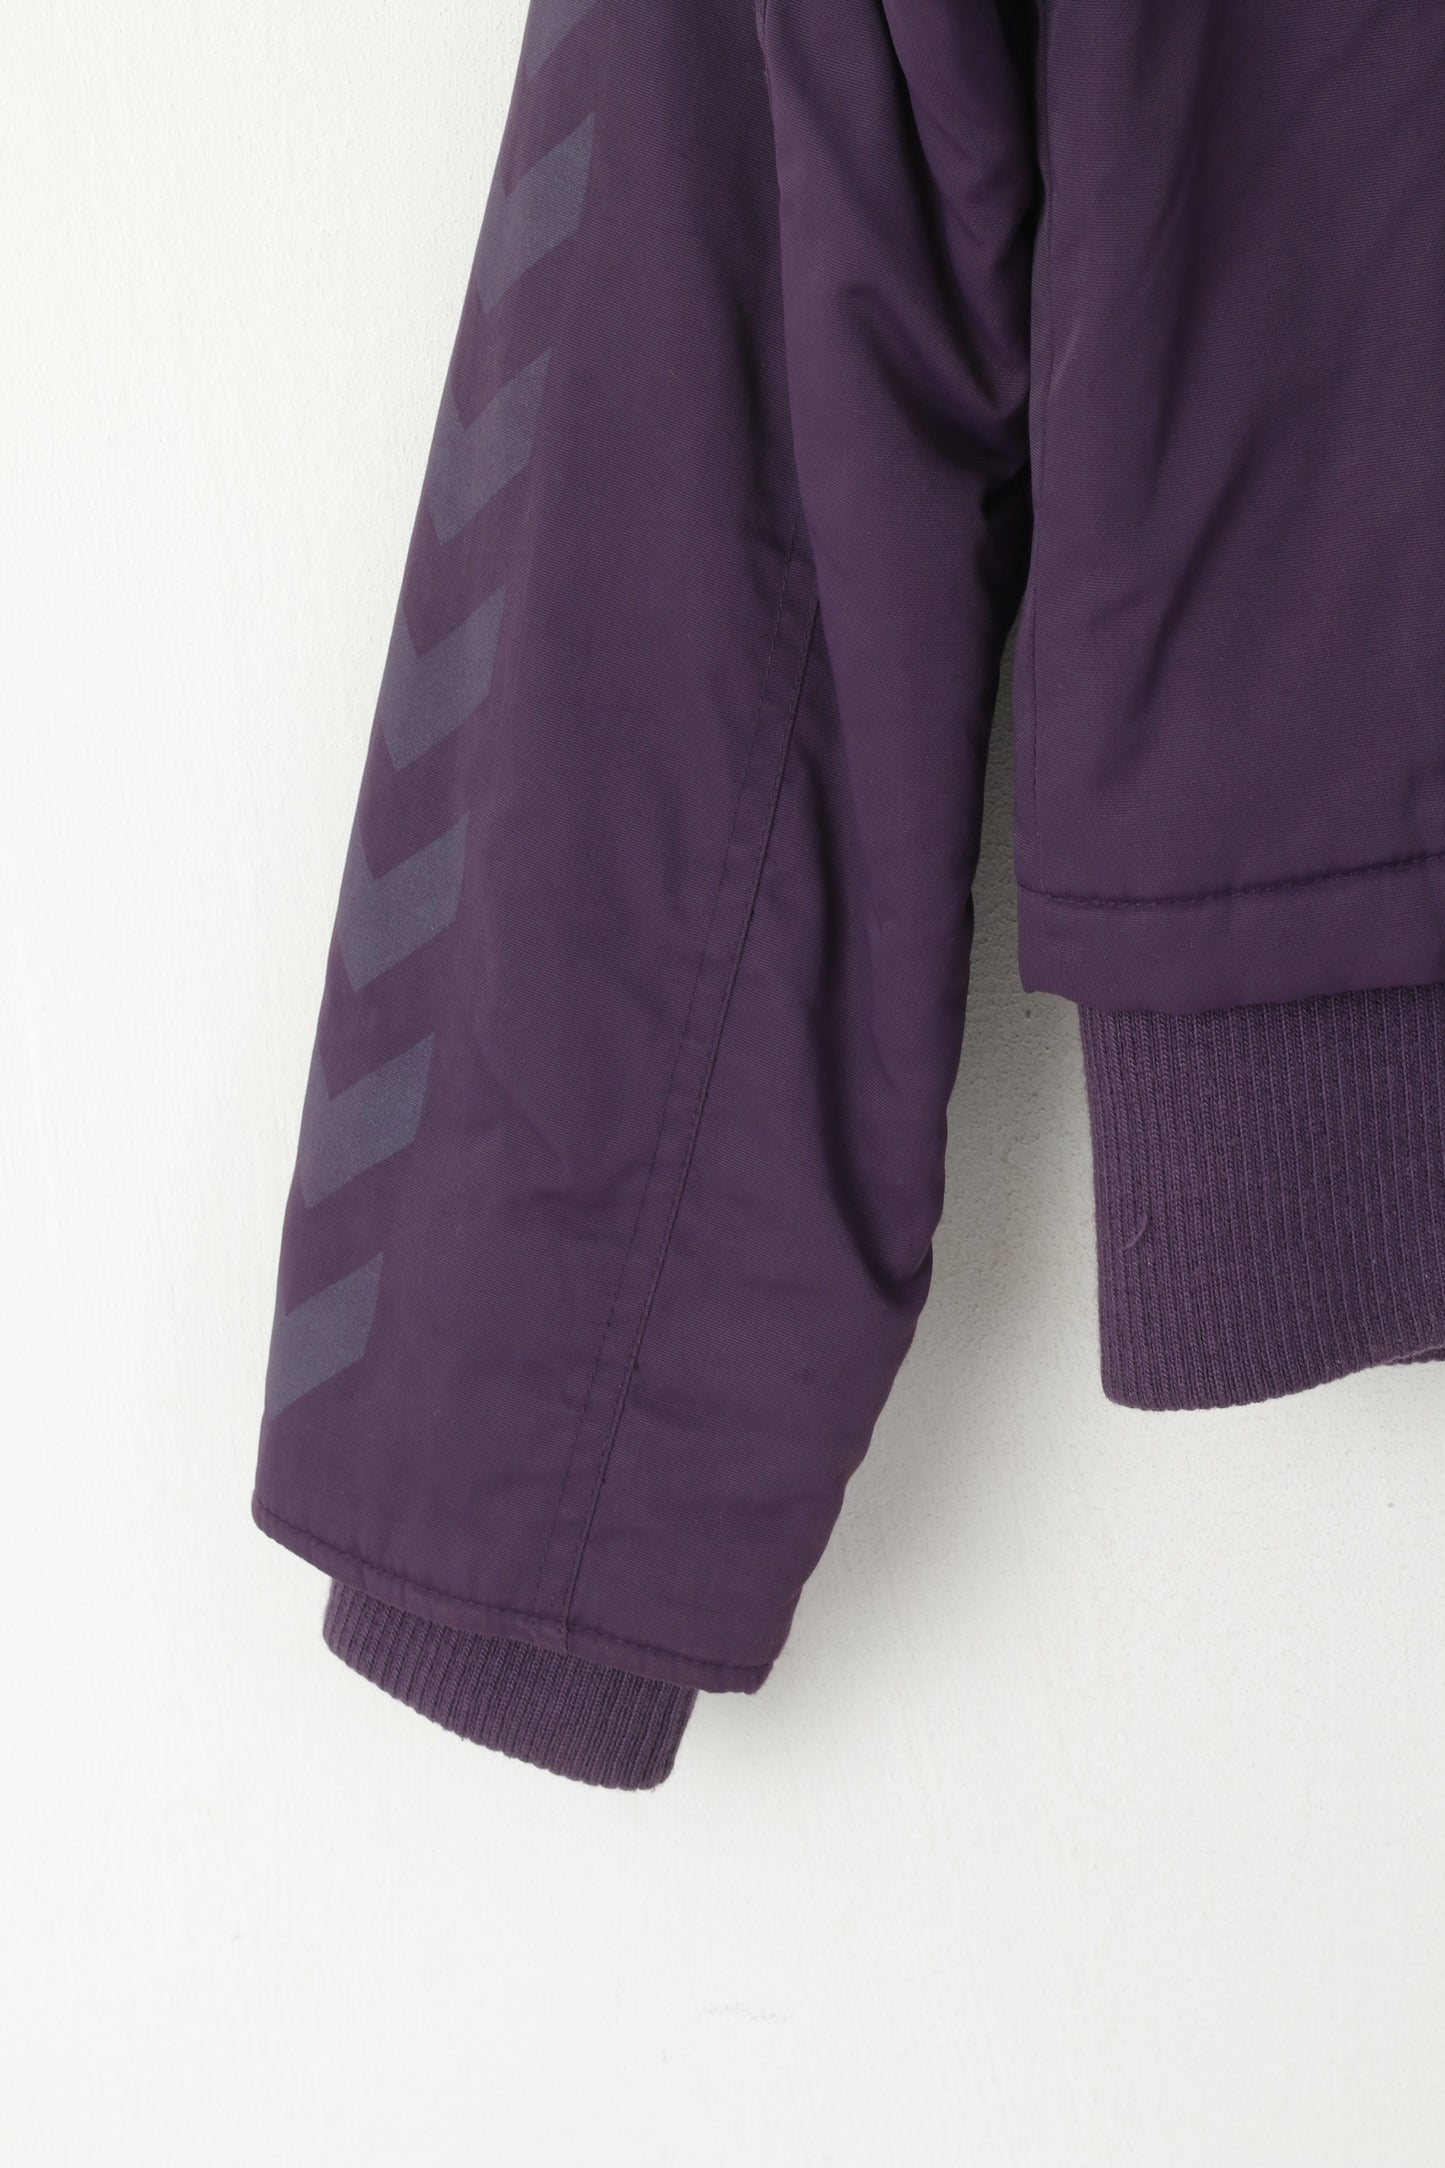 Hummel Youth Girls 176 Jacket Purple Nylon Waterproof Full Zipper Lined Bomber Top